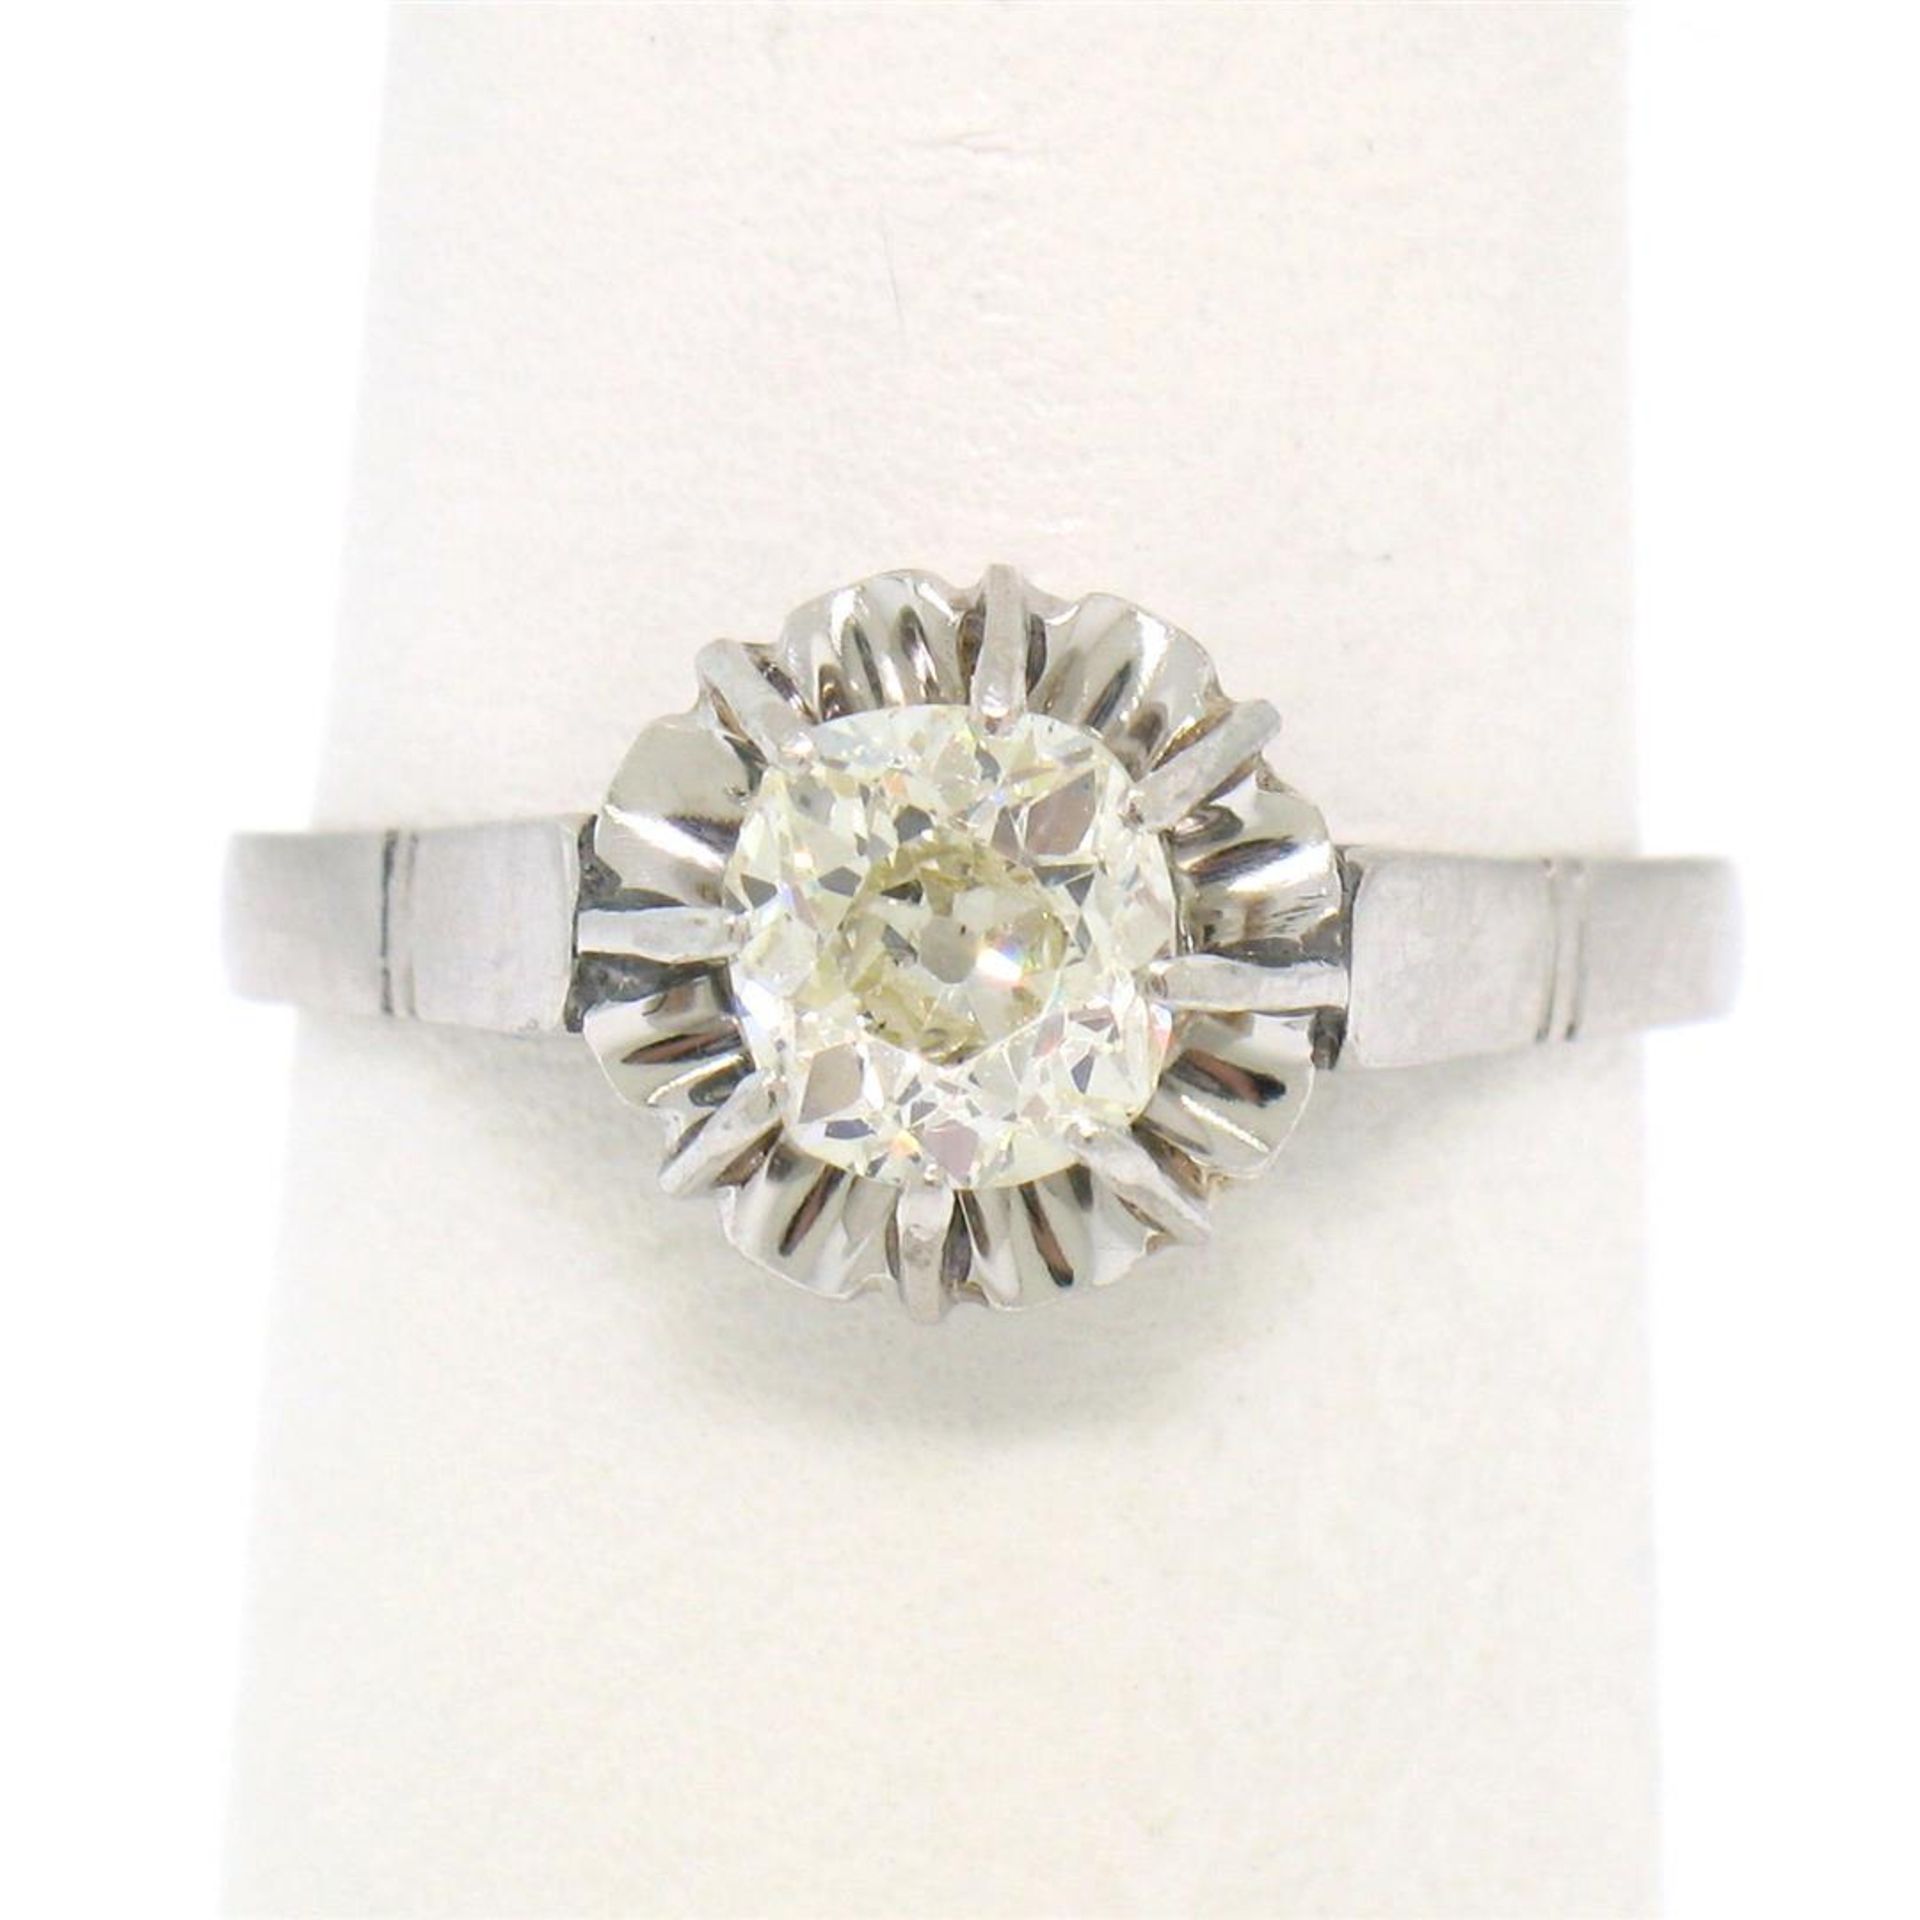 Antique Art Deco Platinum 0.78ct Old Mine Cut Diamond Filigree Engagement Ring - Image 6 of 9